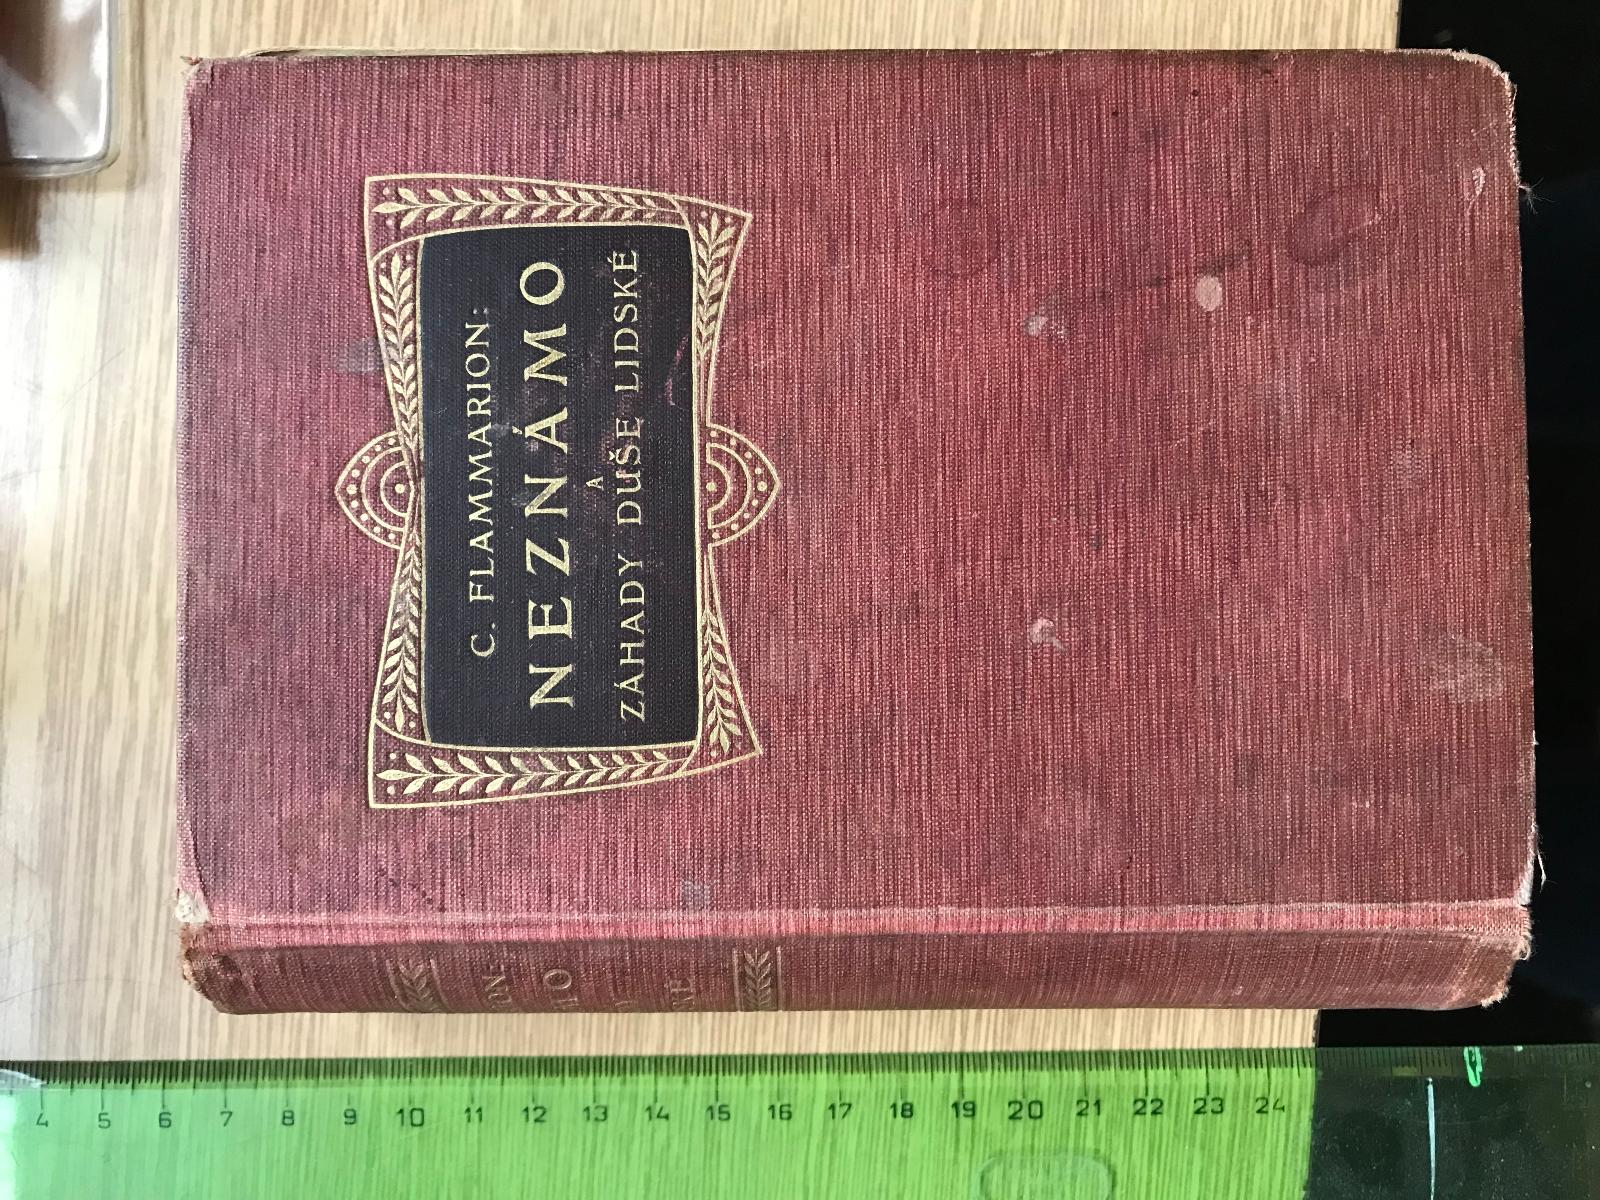 Nevedno a záhady duše ľudské - Flammarion C. 1907 - Odborné knihy